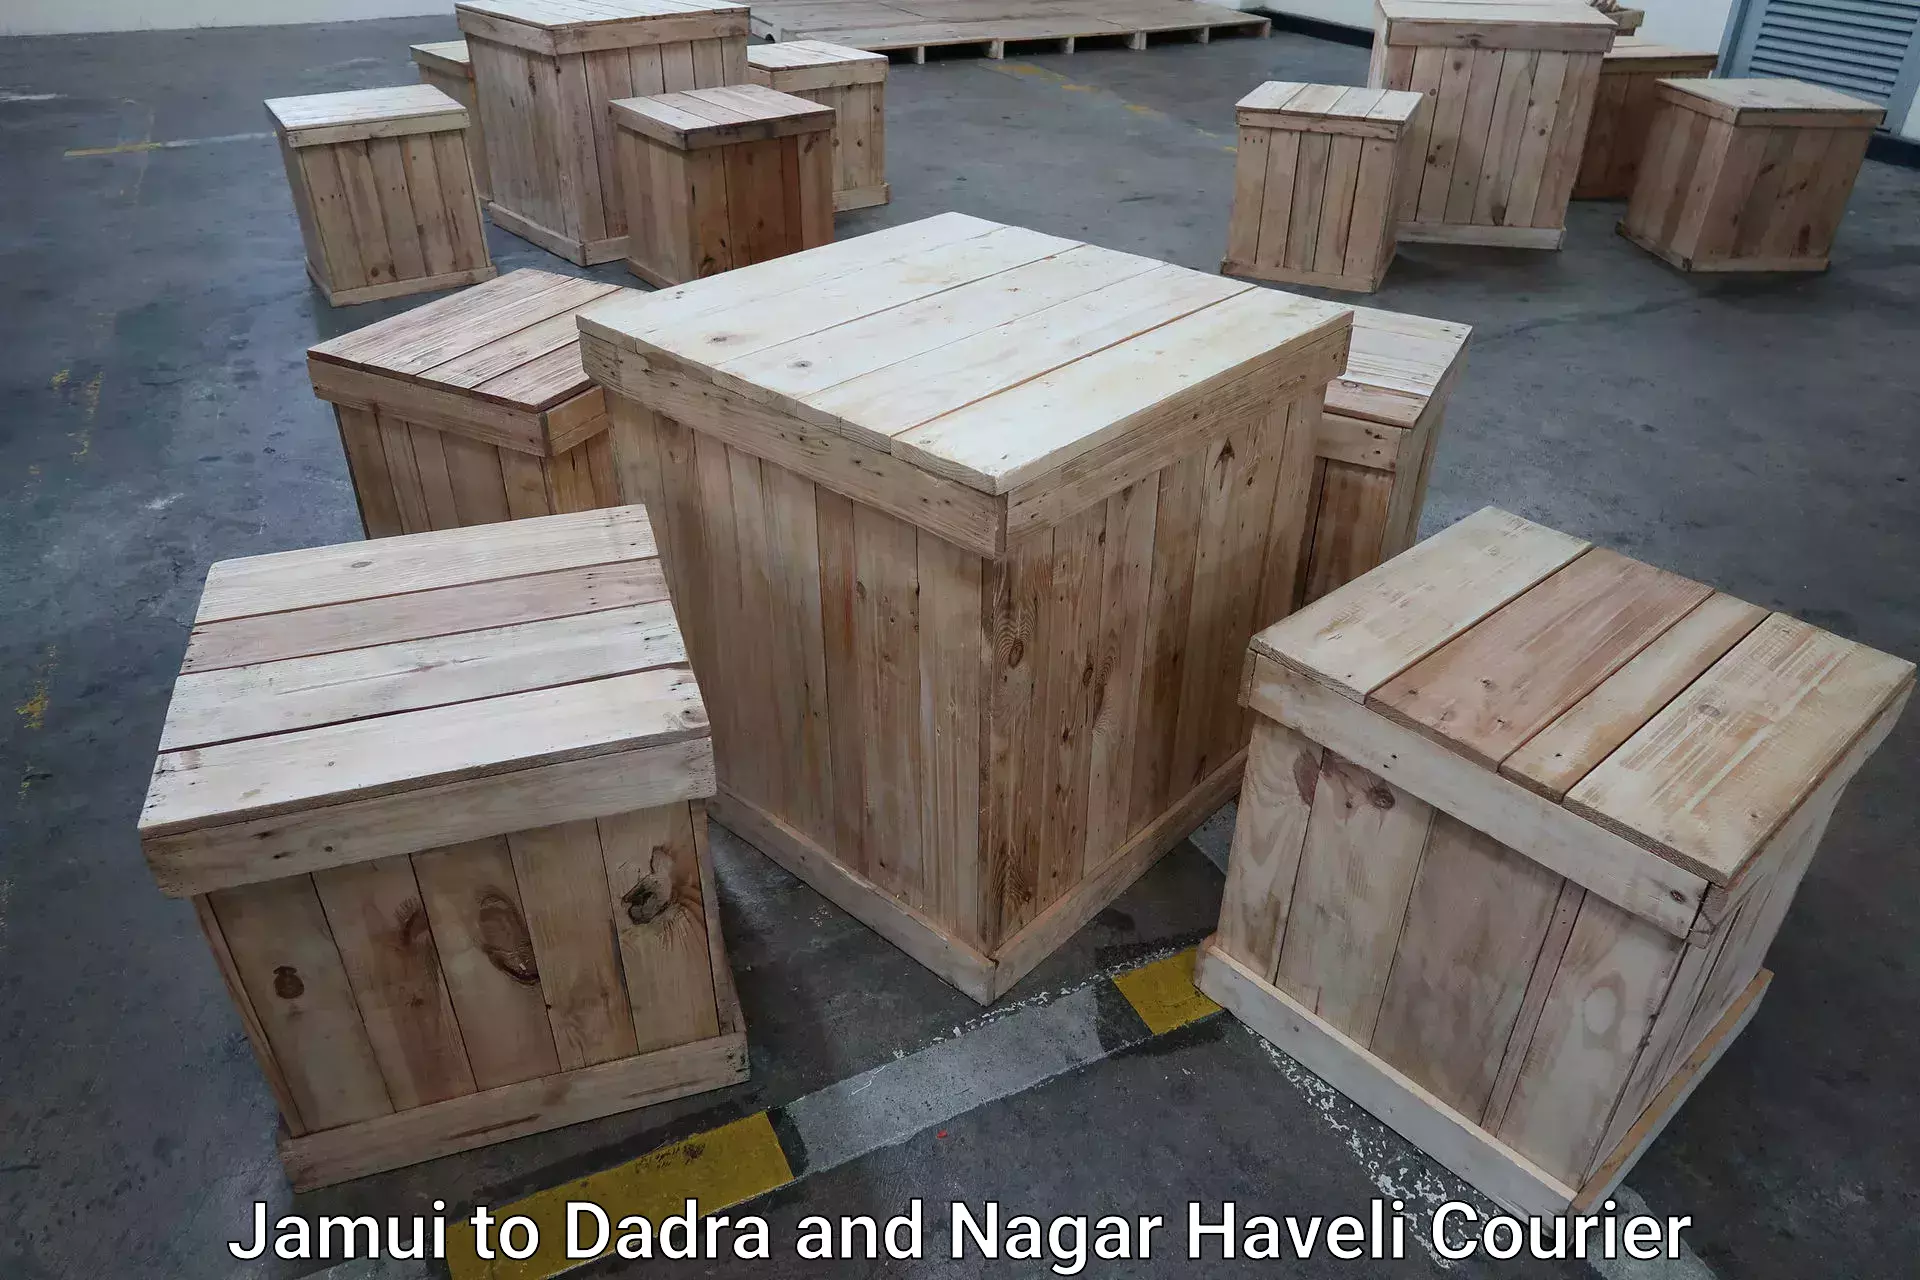 Luggage shipping planner Jamui to Dadra and Nagar Haveli